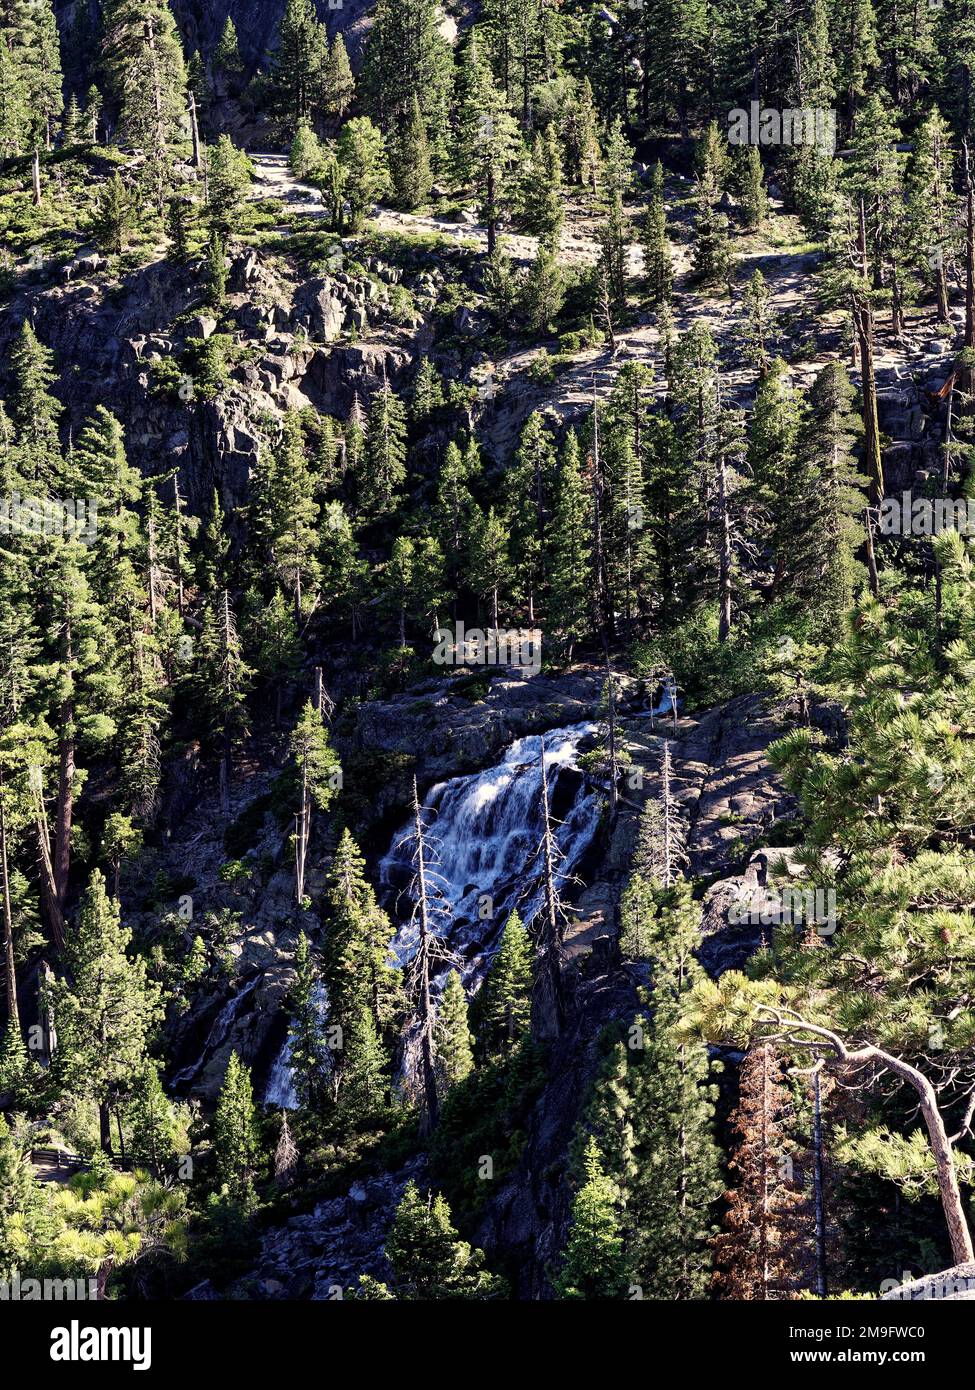 Cascades d'eau le long des chutes d'Eagle, au-dessus du parc national d'Emerald Bay, dans la région sud-ouest du lac Tahoe, dans les montagnes de la Sierra Nevada, en Californie. Banque D'Images